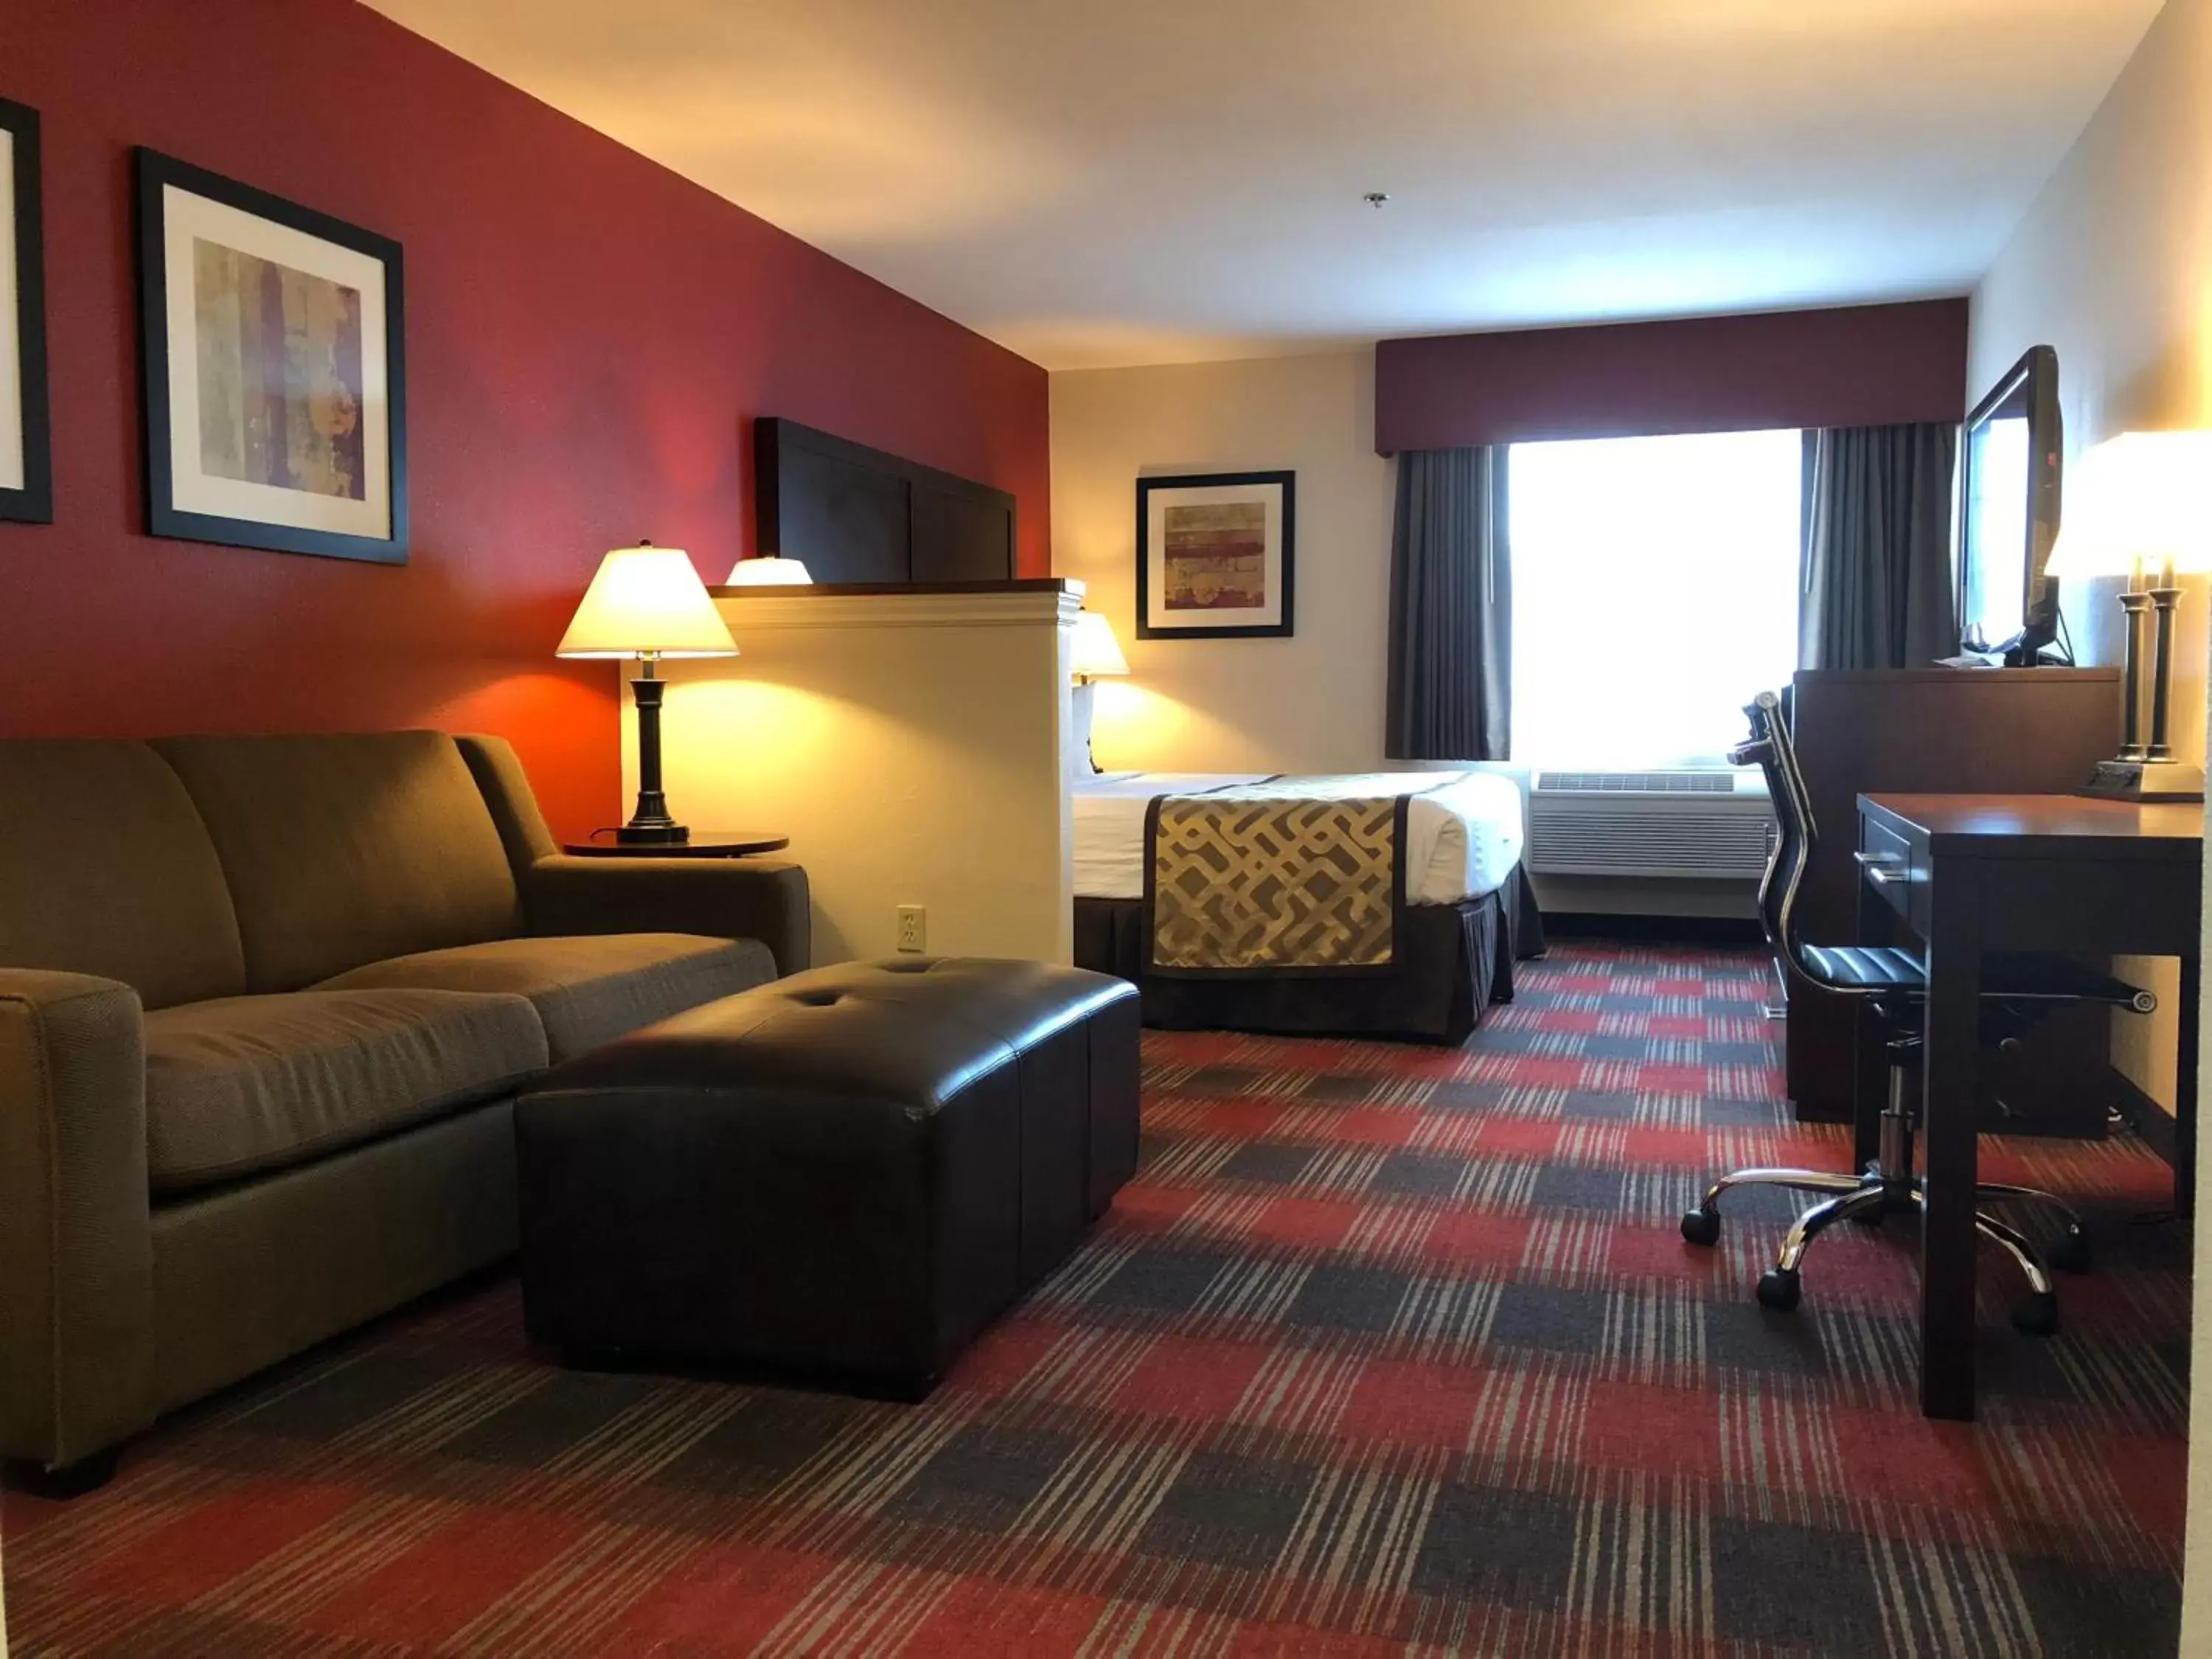 Bedroom, Seating Area in Best Western Dallas Inn & Suites